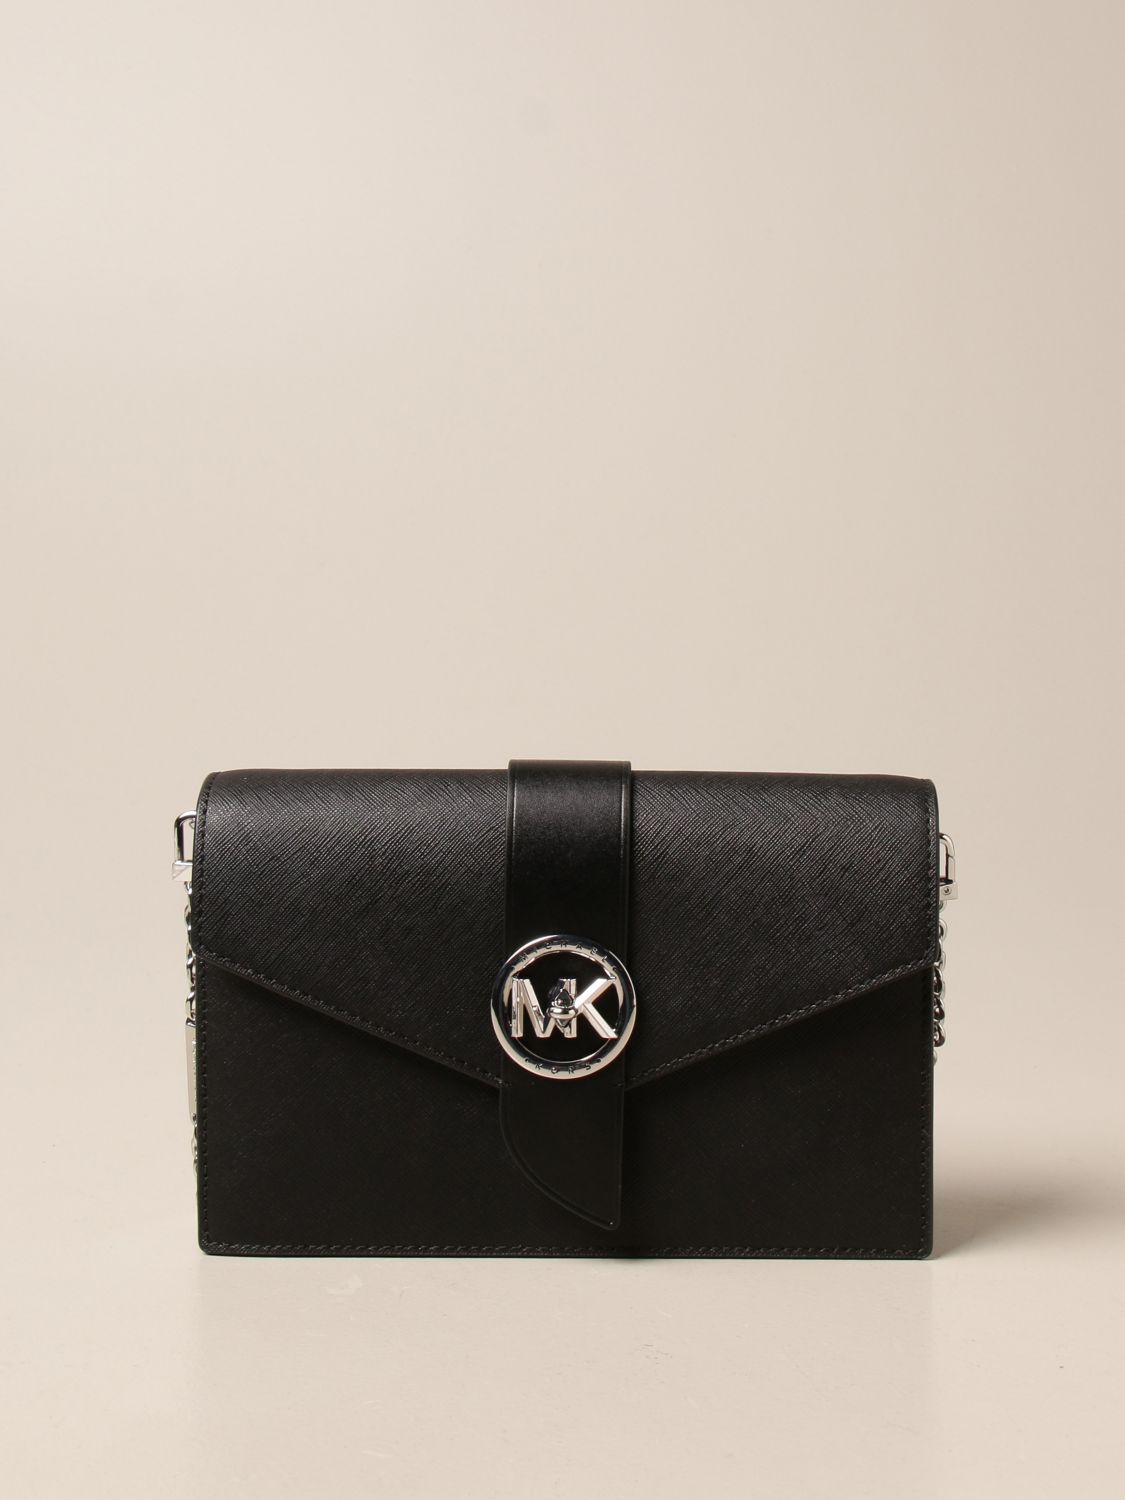 mk saffiano leather